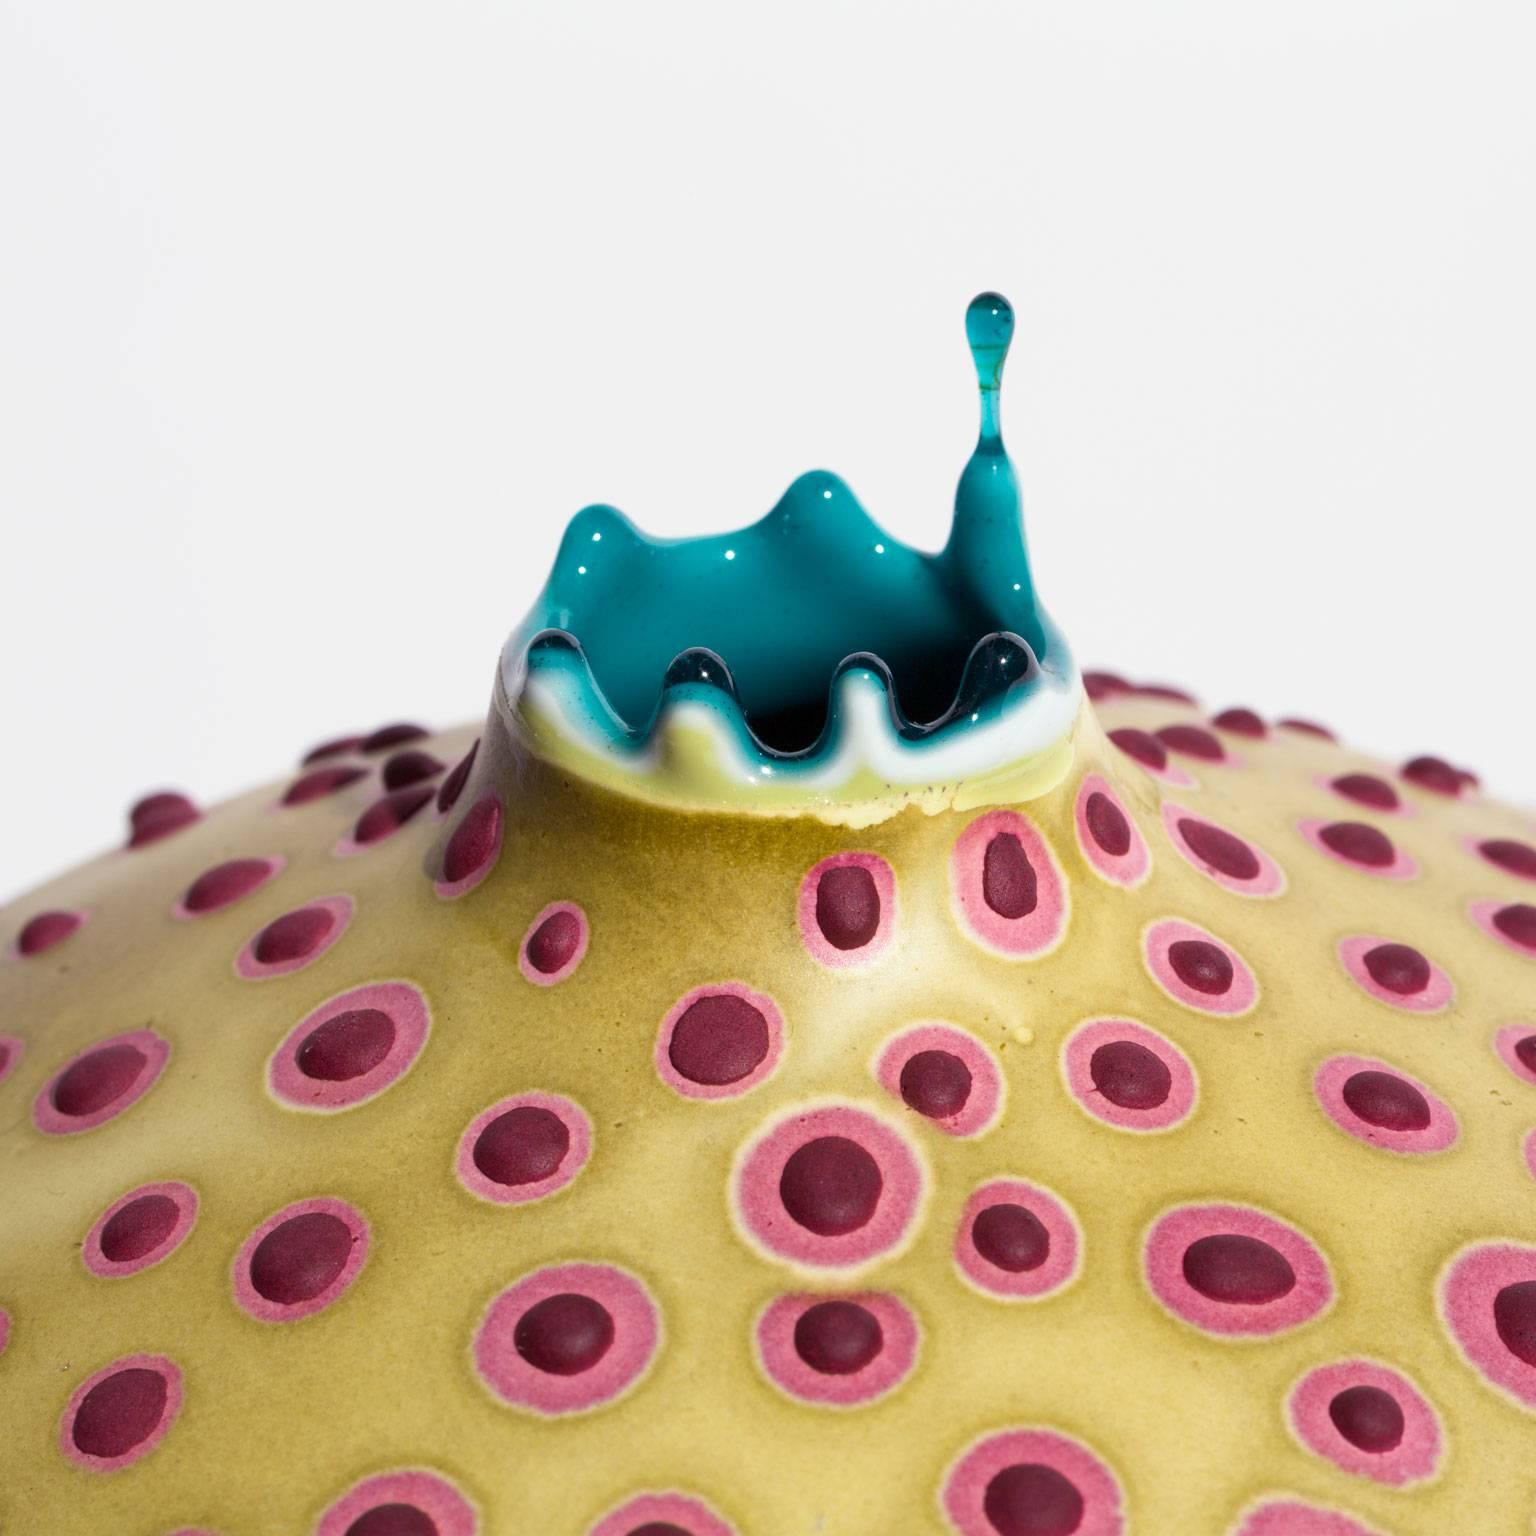 Diese auffällige Vase wird von der Künstlerin Elyse Graham in ihrem Atelier in Los Angeles handgefertigt.

Diese Sammlung von Gefäßen ist von unserem unglaublichen und vielfältigen Mikrobiom inspiriert.

Die Künstlerin ist bekannt für ihre